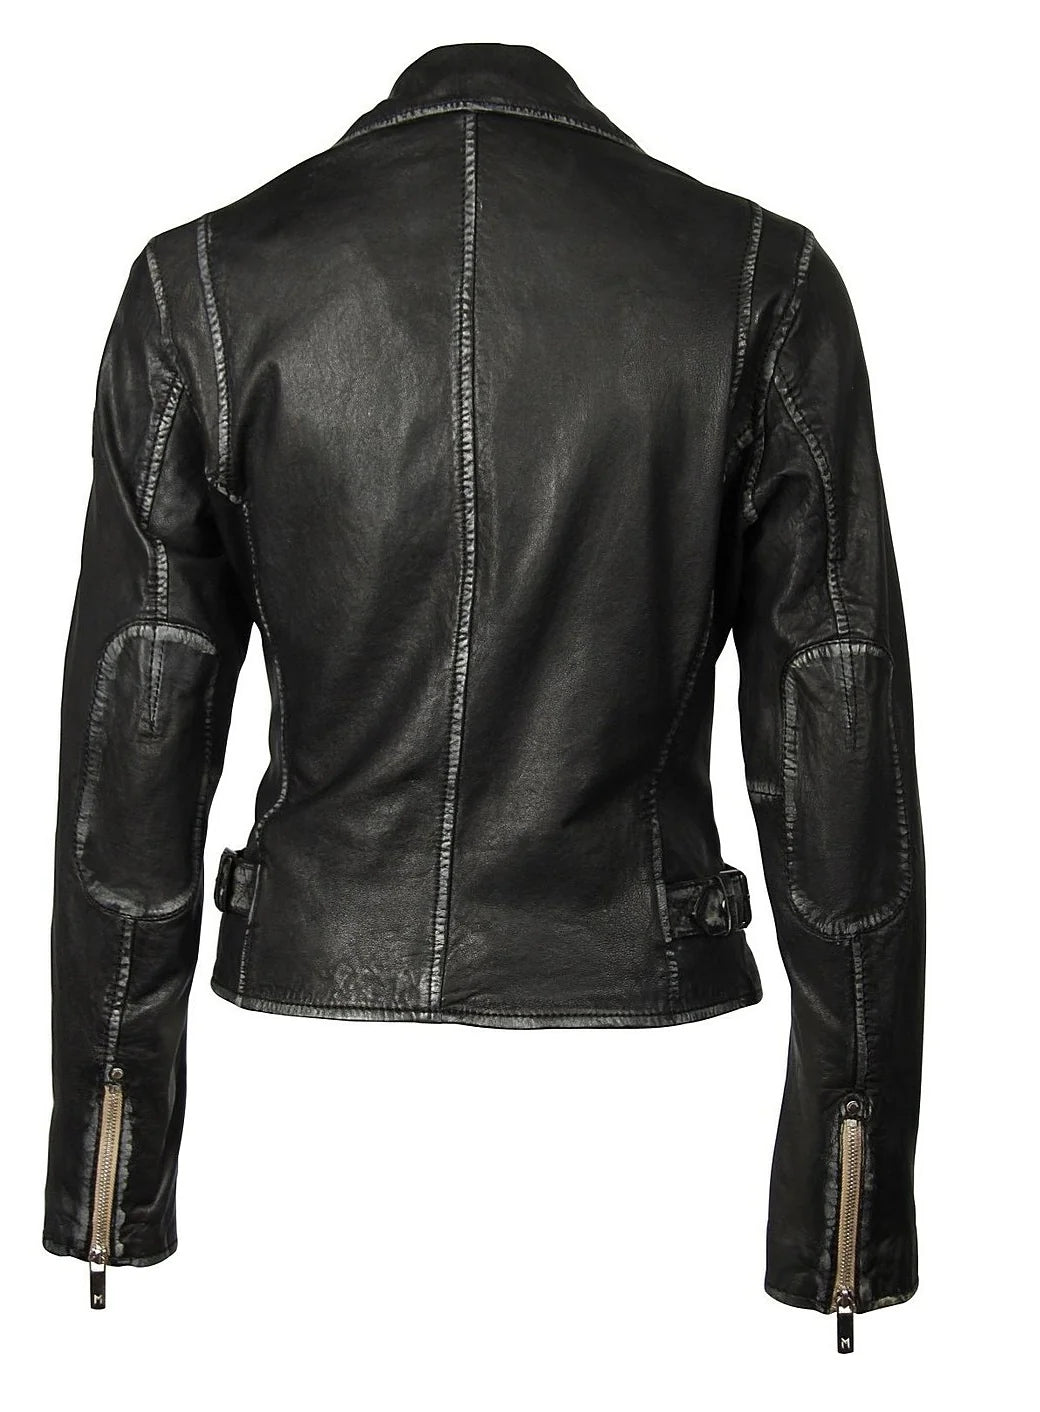 Sofia RF Leather Jacket - Mauritius